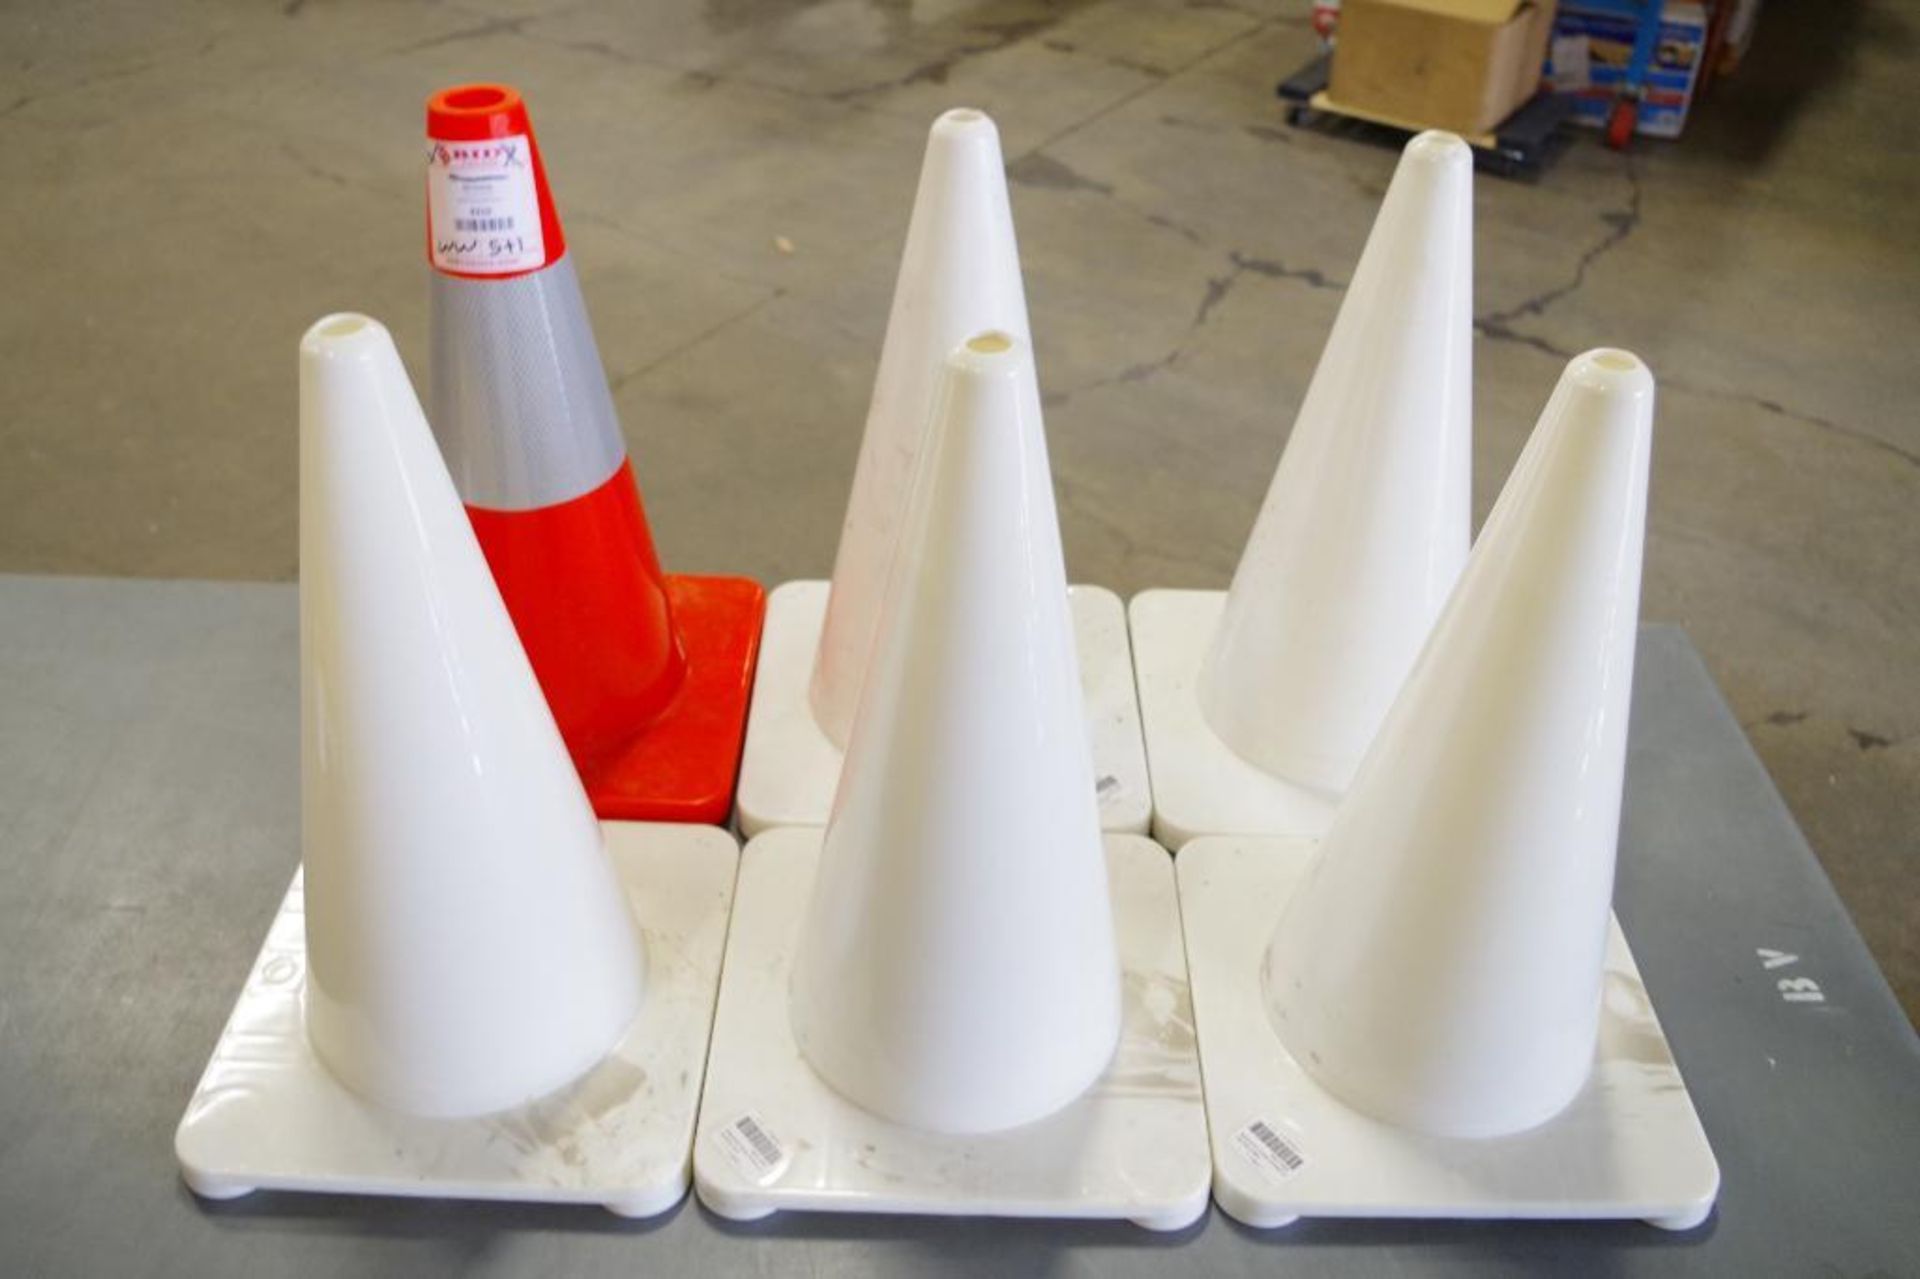 [5] 18" White Polyethylene Traffic Cones M/N 1YBW7 & [1] Orange Traffic Cone